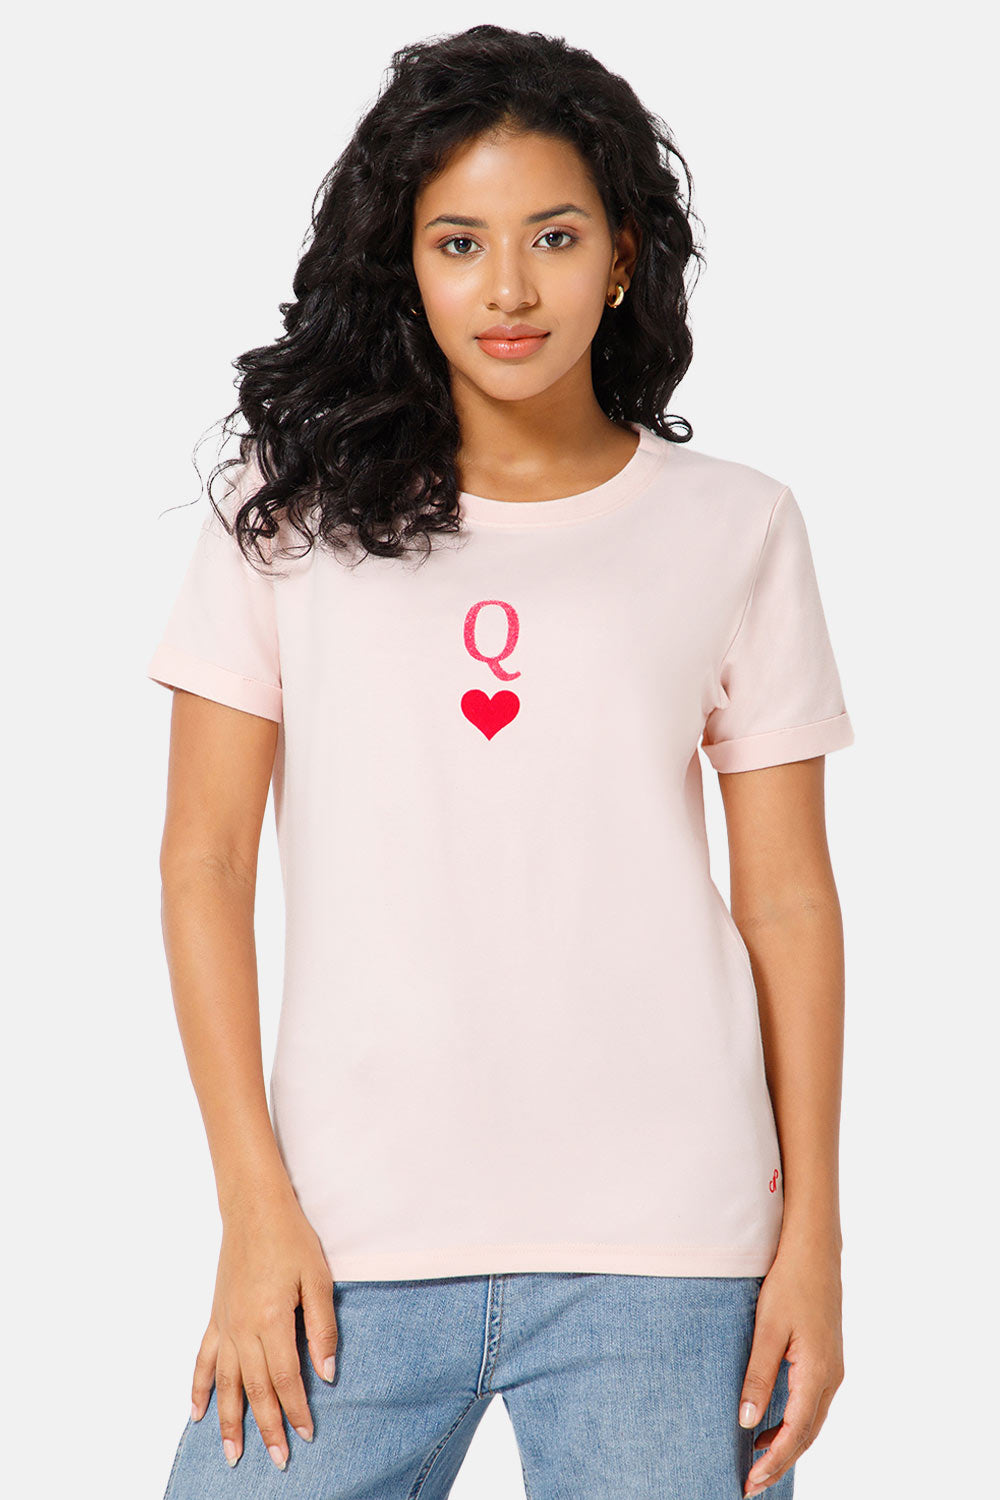 Jusperf Women Half Sleeve Crew Neck T-shirt  - Pink - SD21